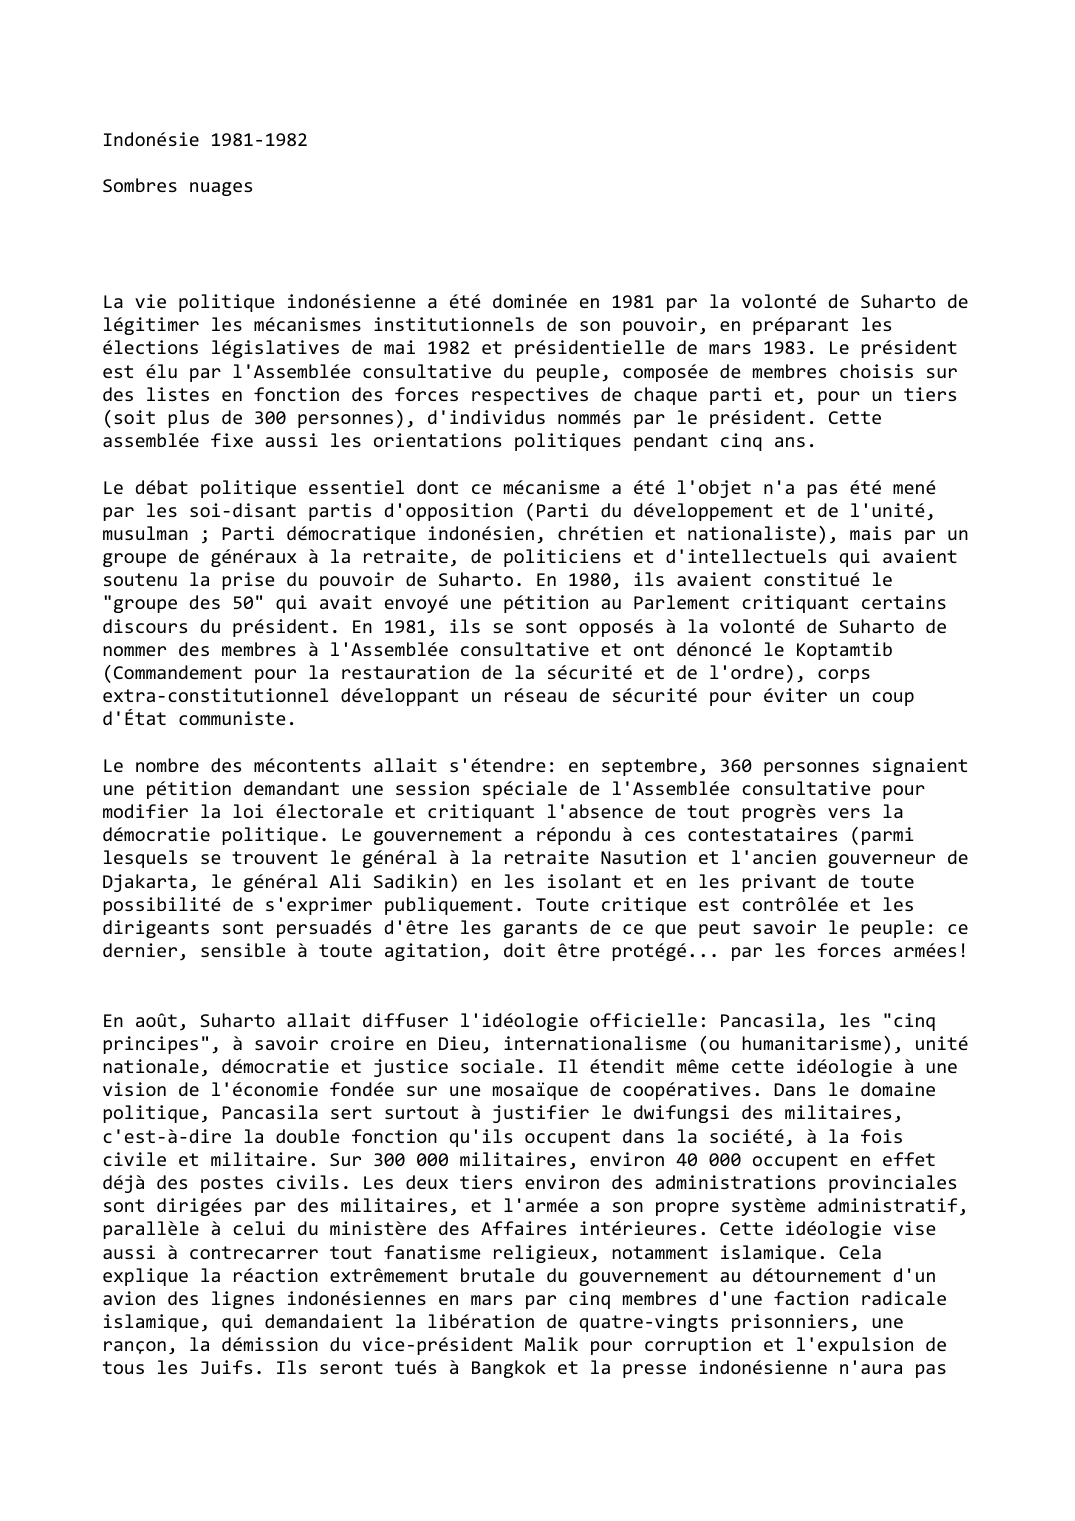 Prévisualisation du document Indonésie (1981-1982)

Sombres nuages